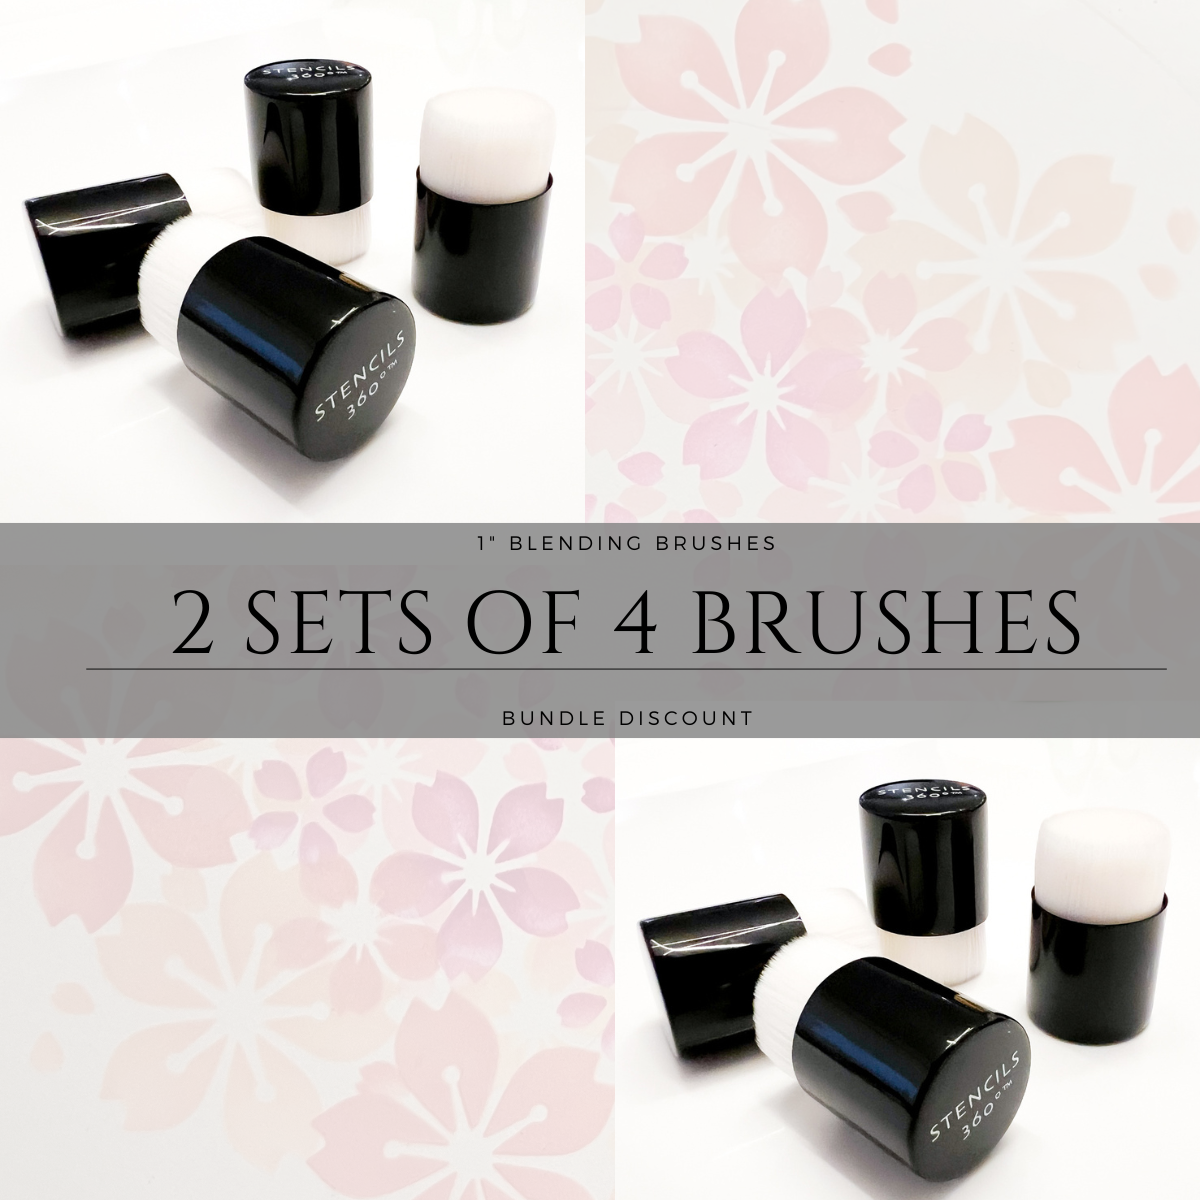 1" Blending Brush Bundle (2 Sets of 4 Brushes)